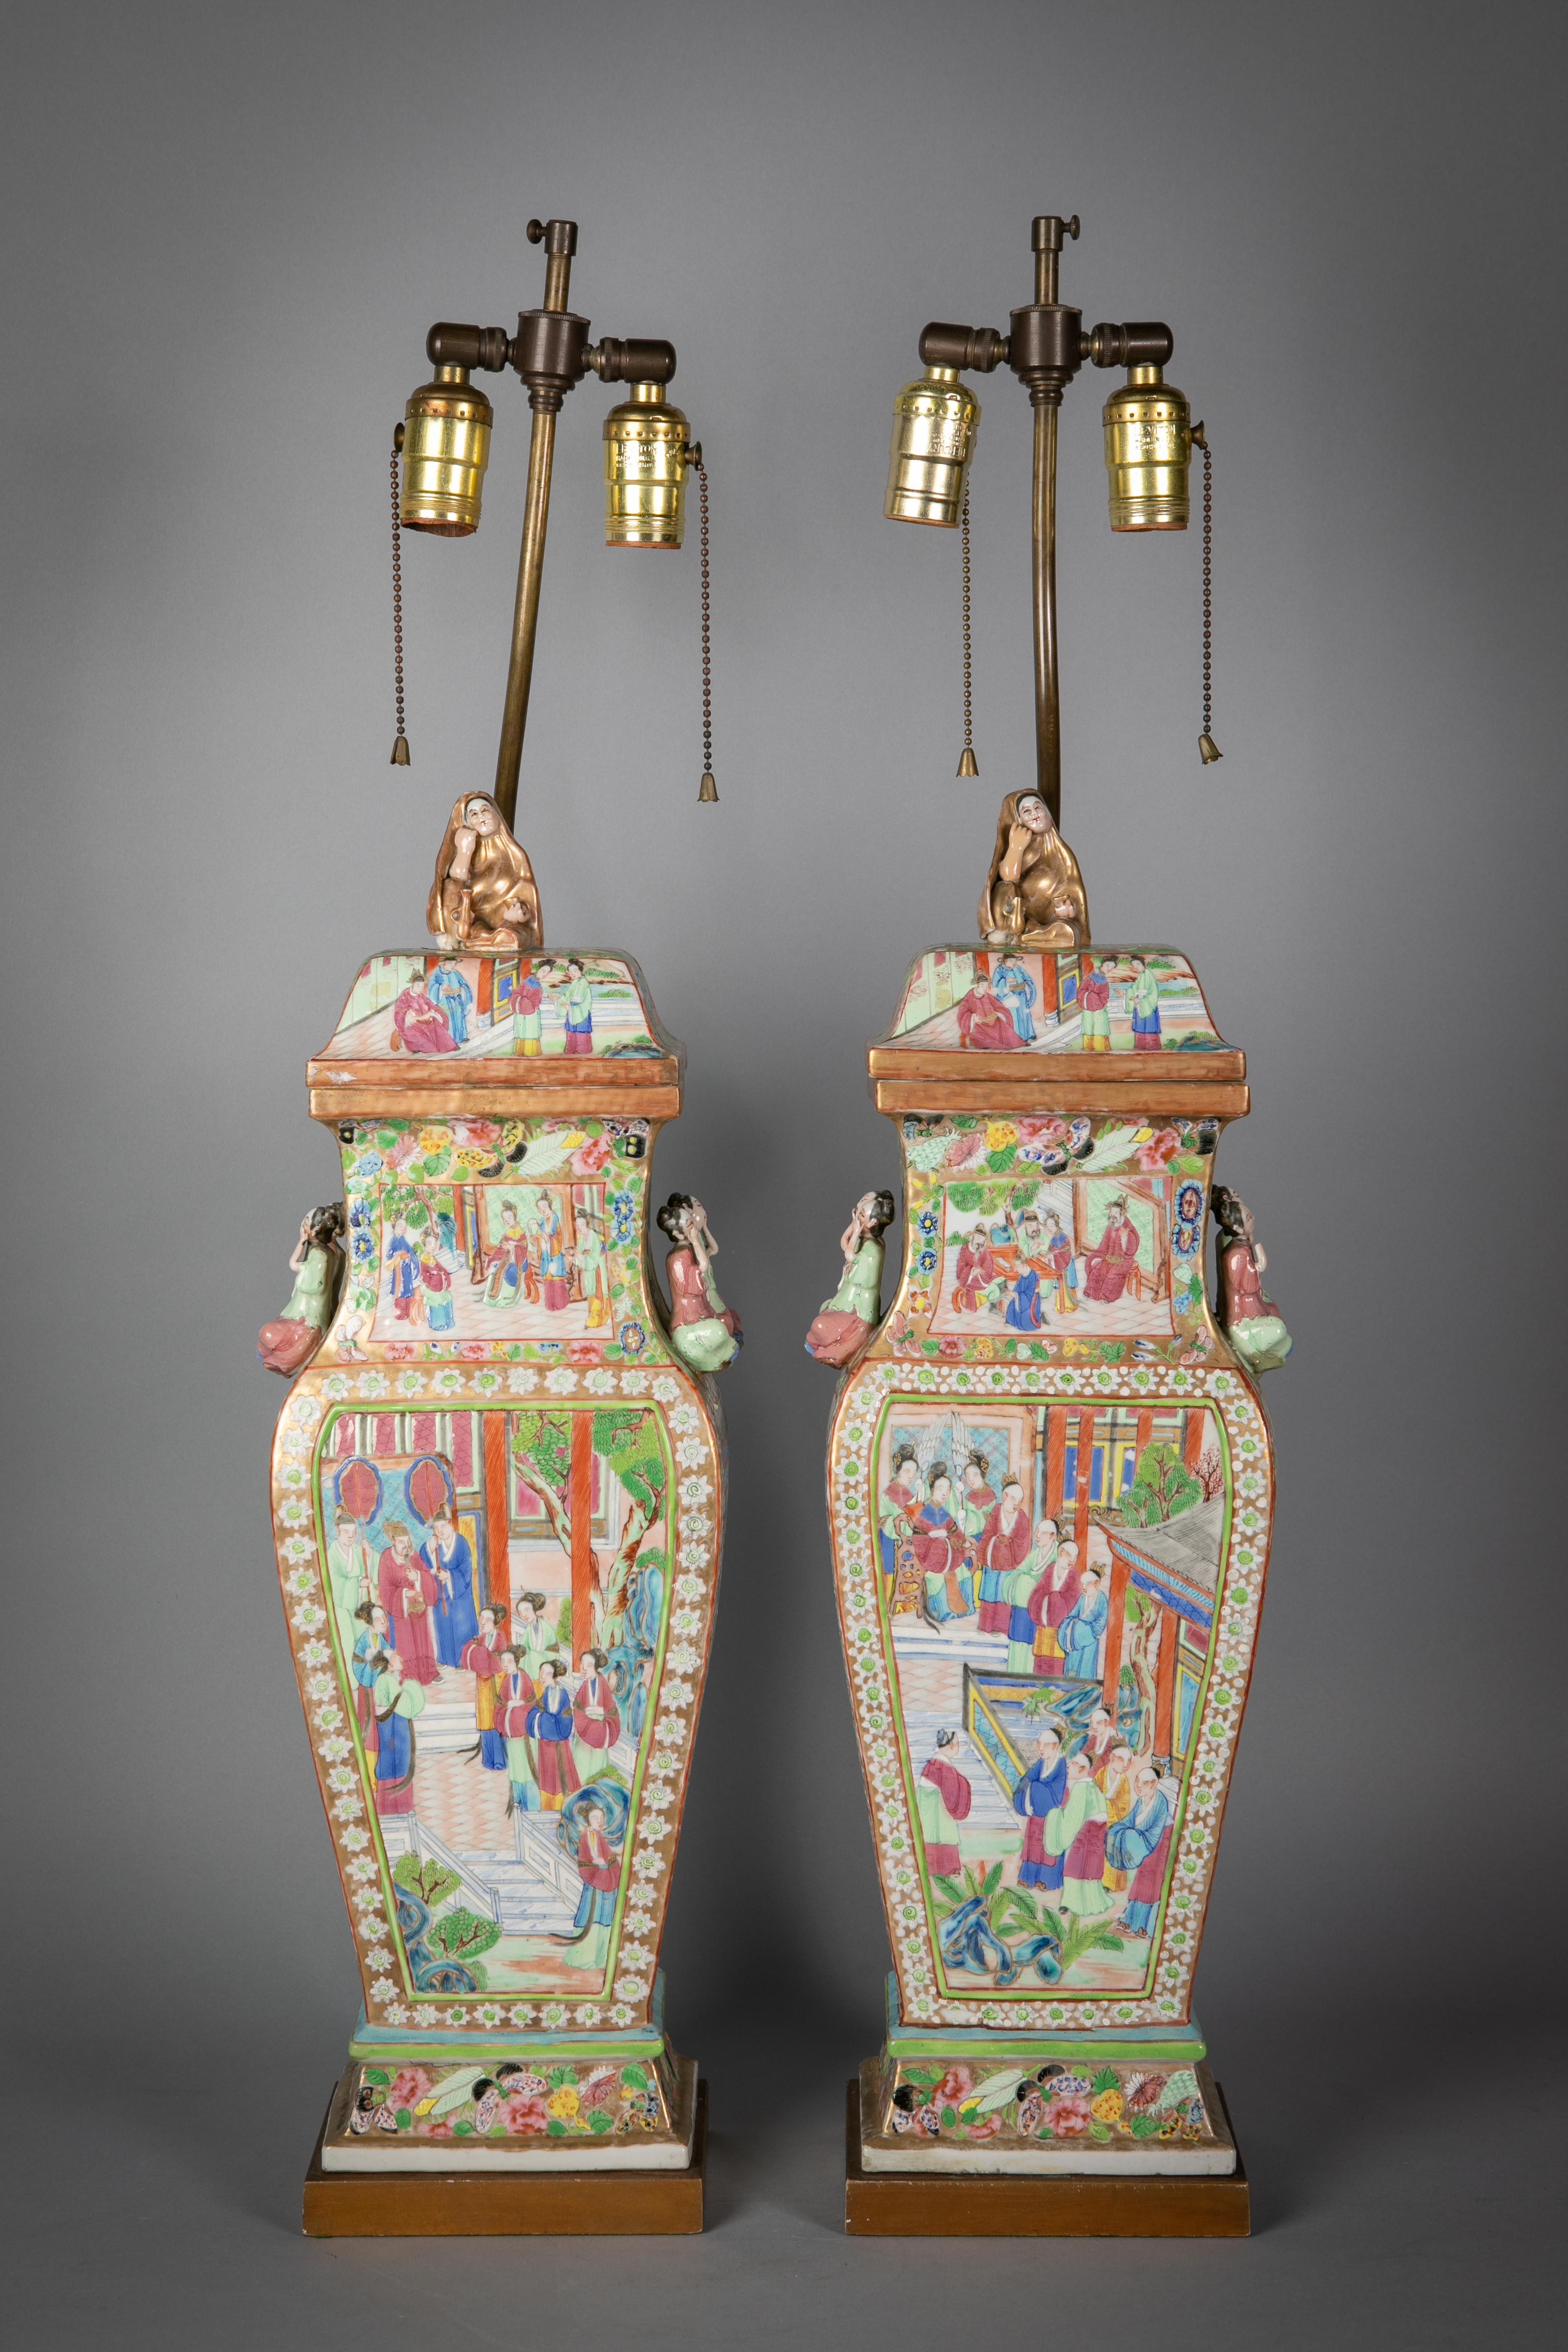 Paire de vases couverts de mandarins roses en porcelaine fine de Chine servant de lampes, vers 1840. Les abat-jour ne sont pas inclus.